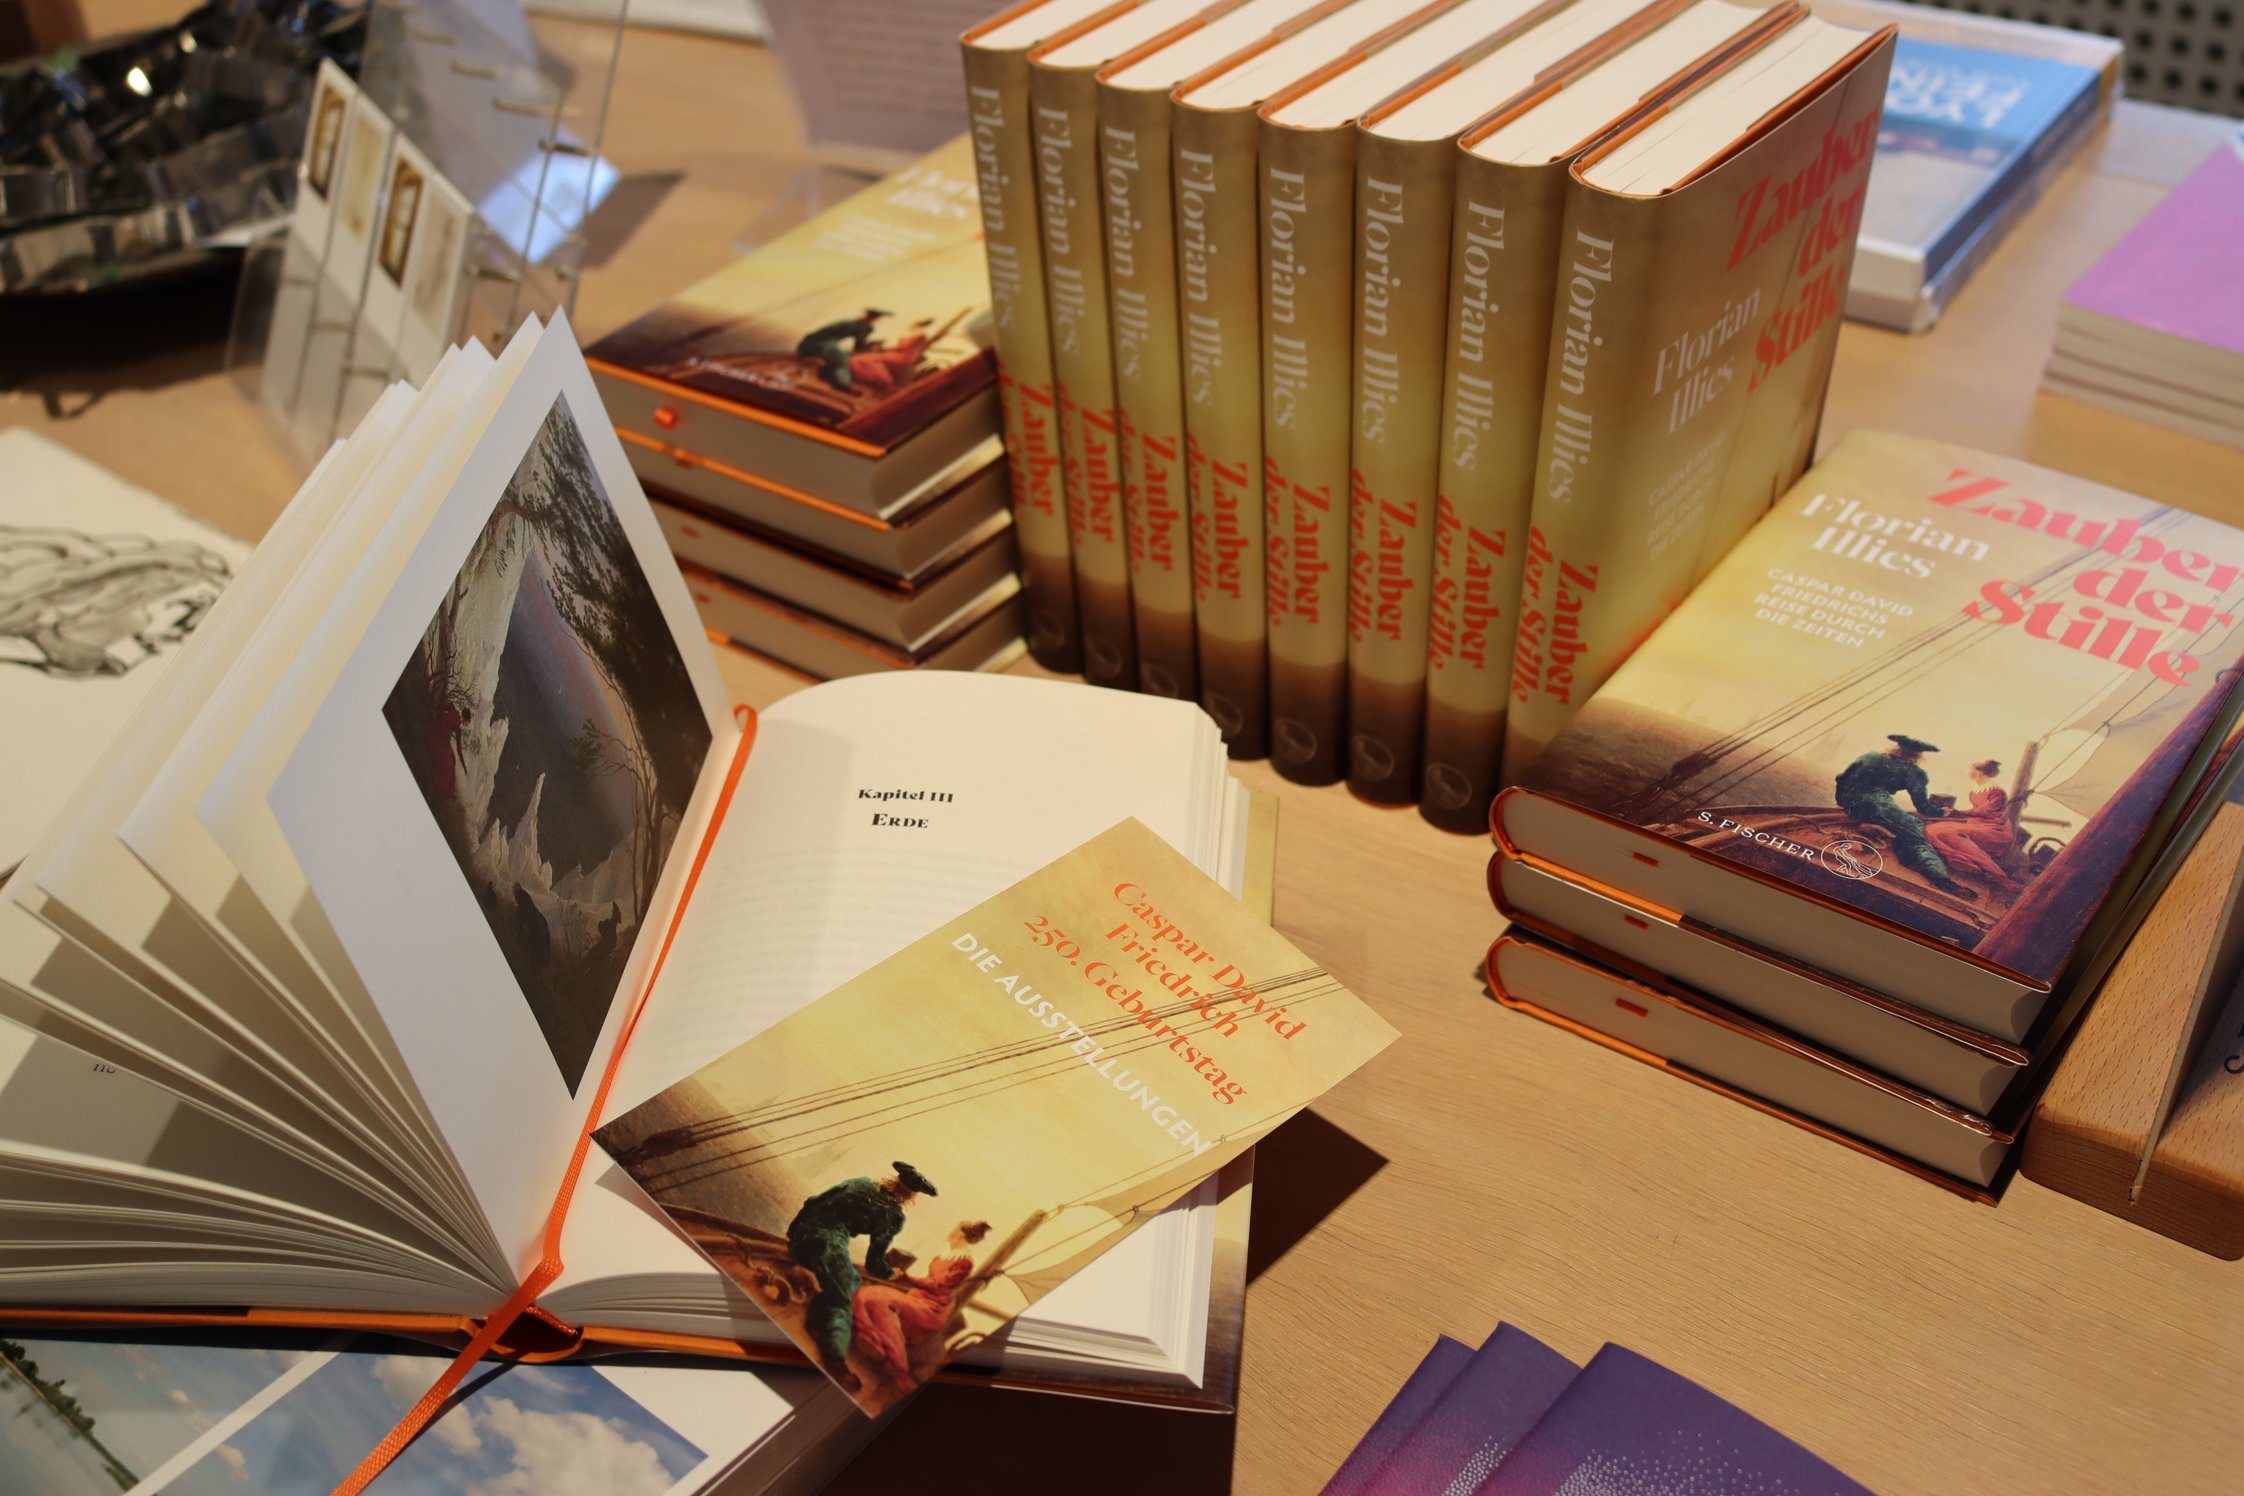 Florian Illies, „Zauber der Stille“: Ein Buch ist aufgeschlagen, im Hintergrund stehen und liegen weitere Exemplare des Buchs.